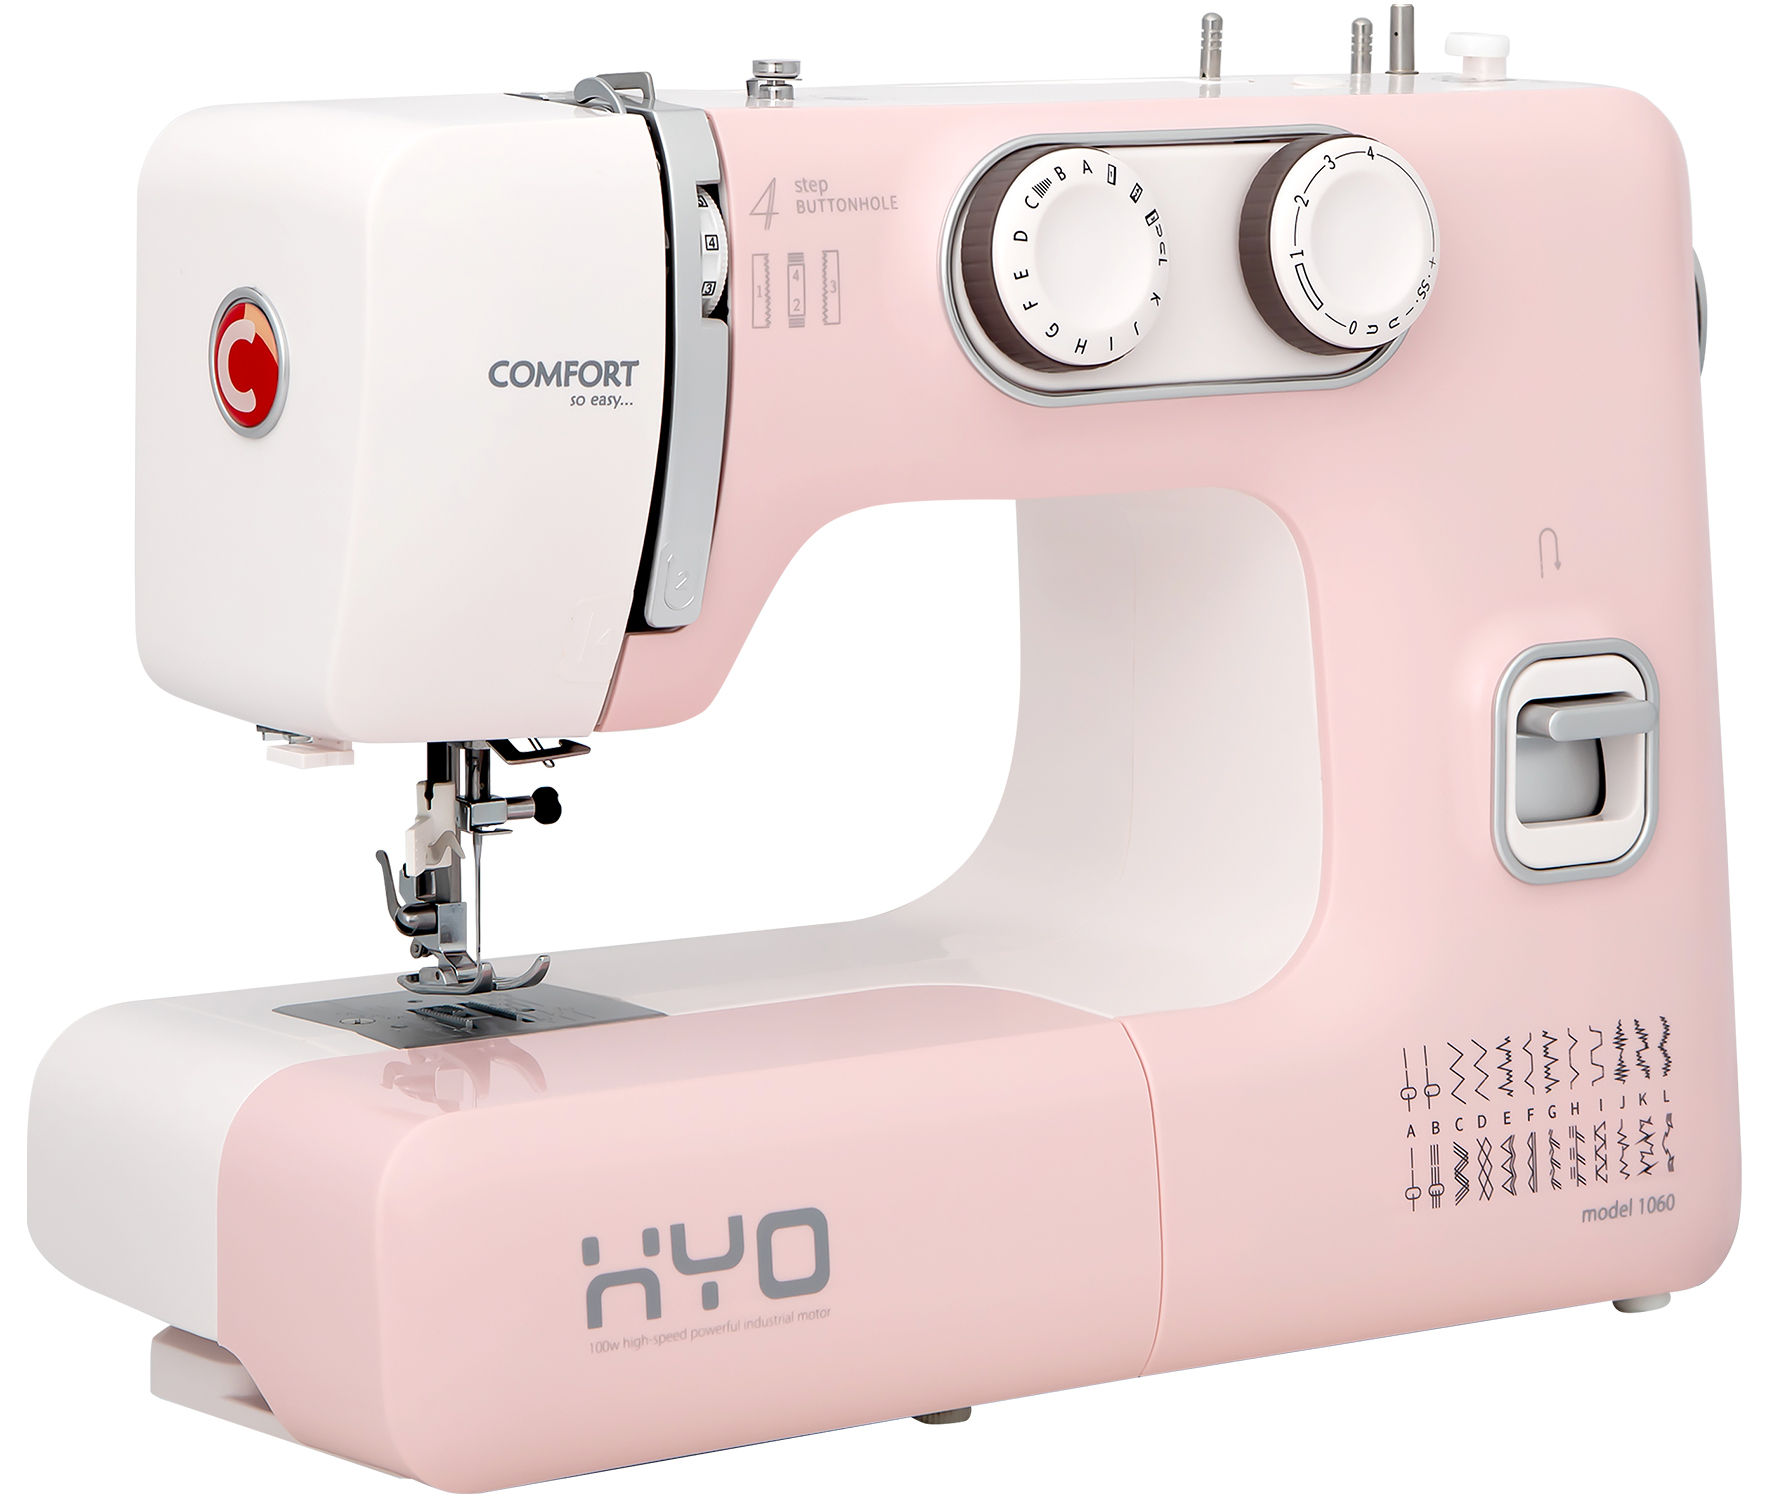 Швейная машина COMFORT 1060 белый, розовый швейная машина alfa next 20 белый розовый